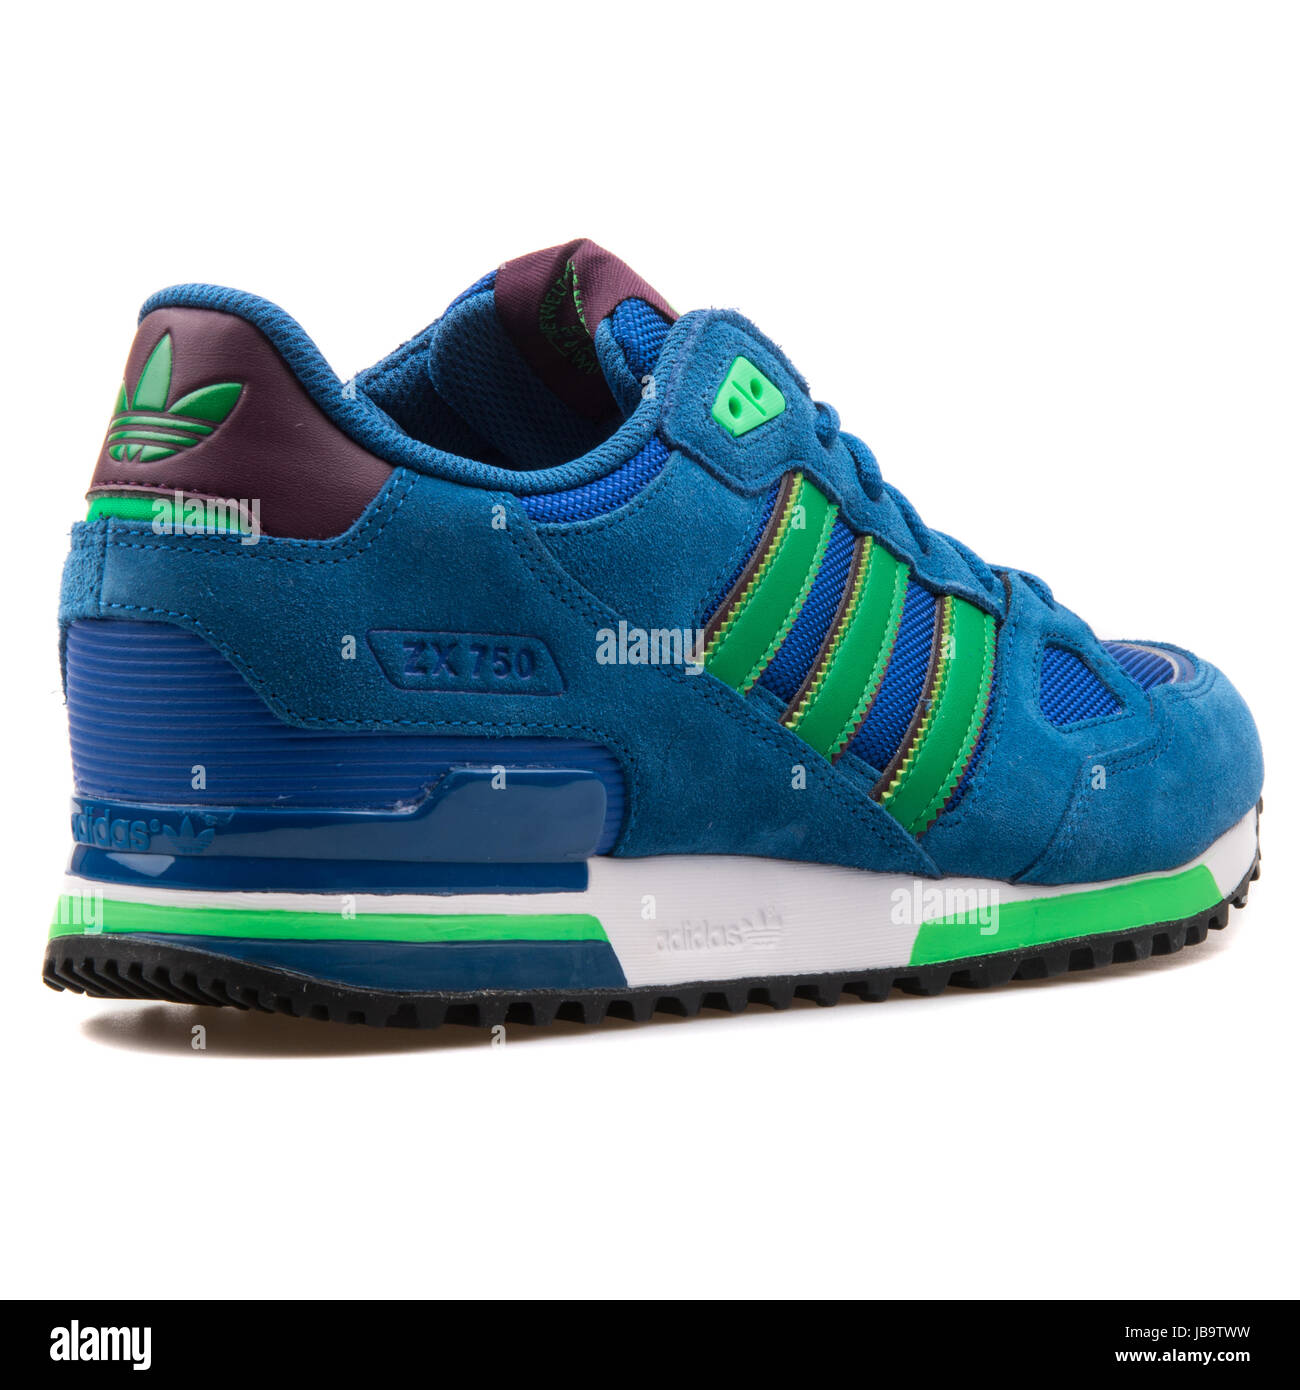 Adidas ZX 750 blau und grün Herren Sport Sneaker - B24857 Stockfotografie -  Alamy